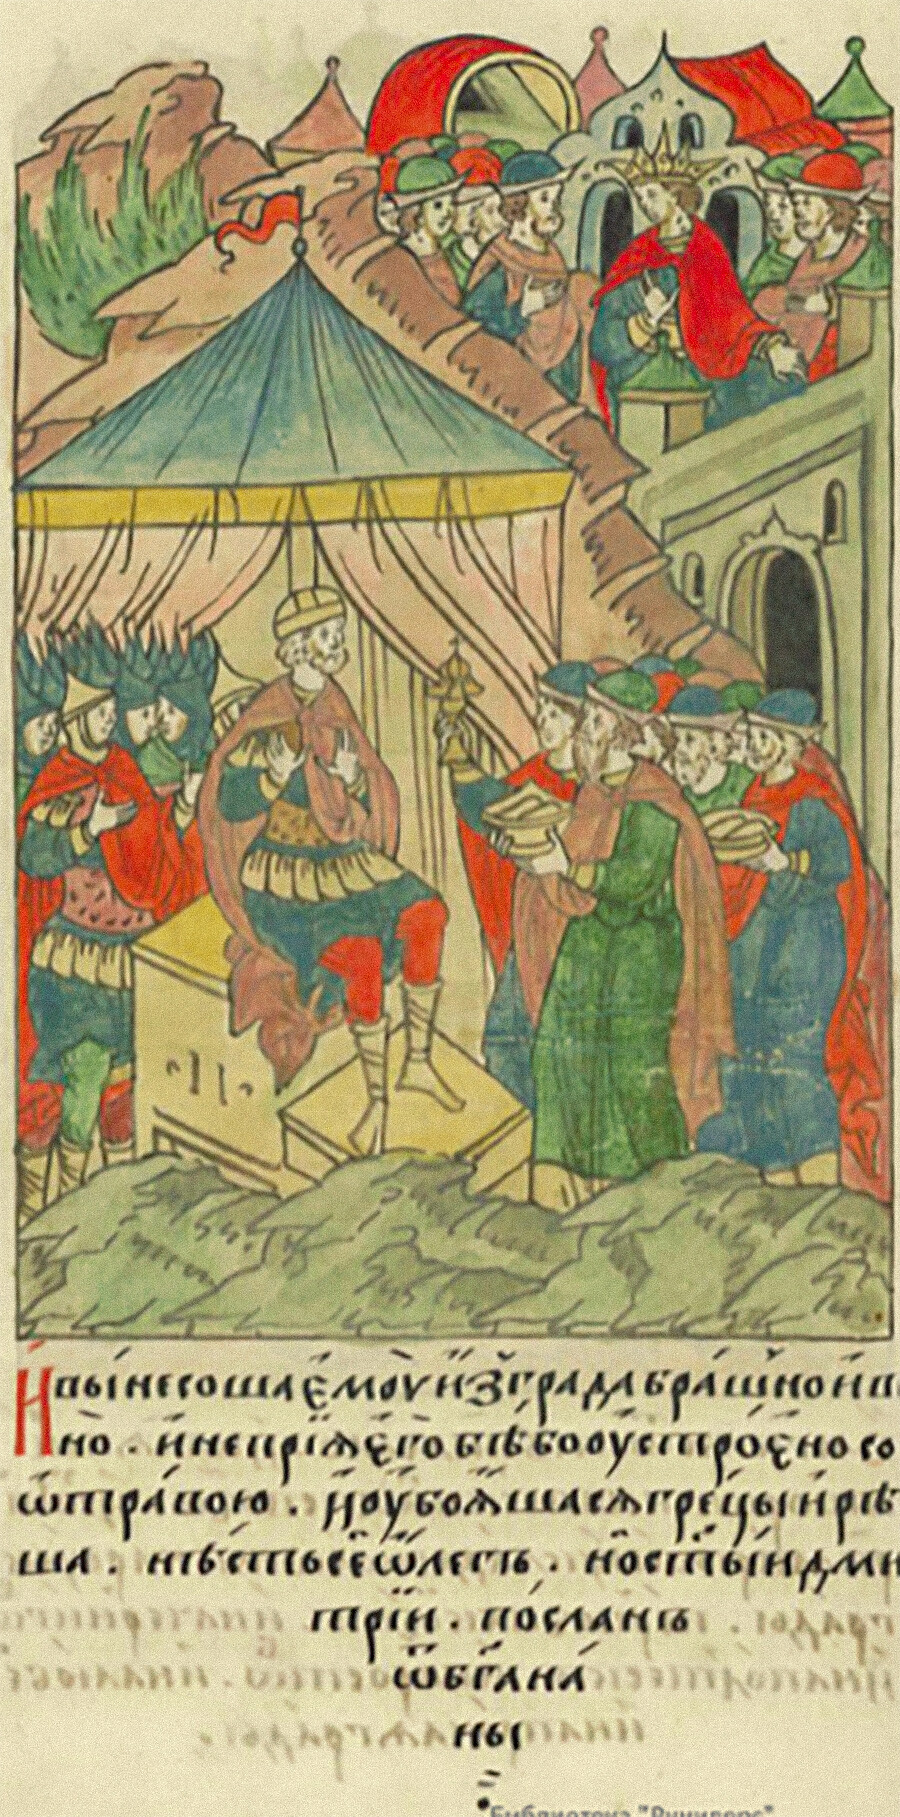 
Визнатиски пратеници кај Олег пред Цариград. Илустрирана хроника, средина на 16 век.
